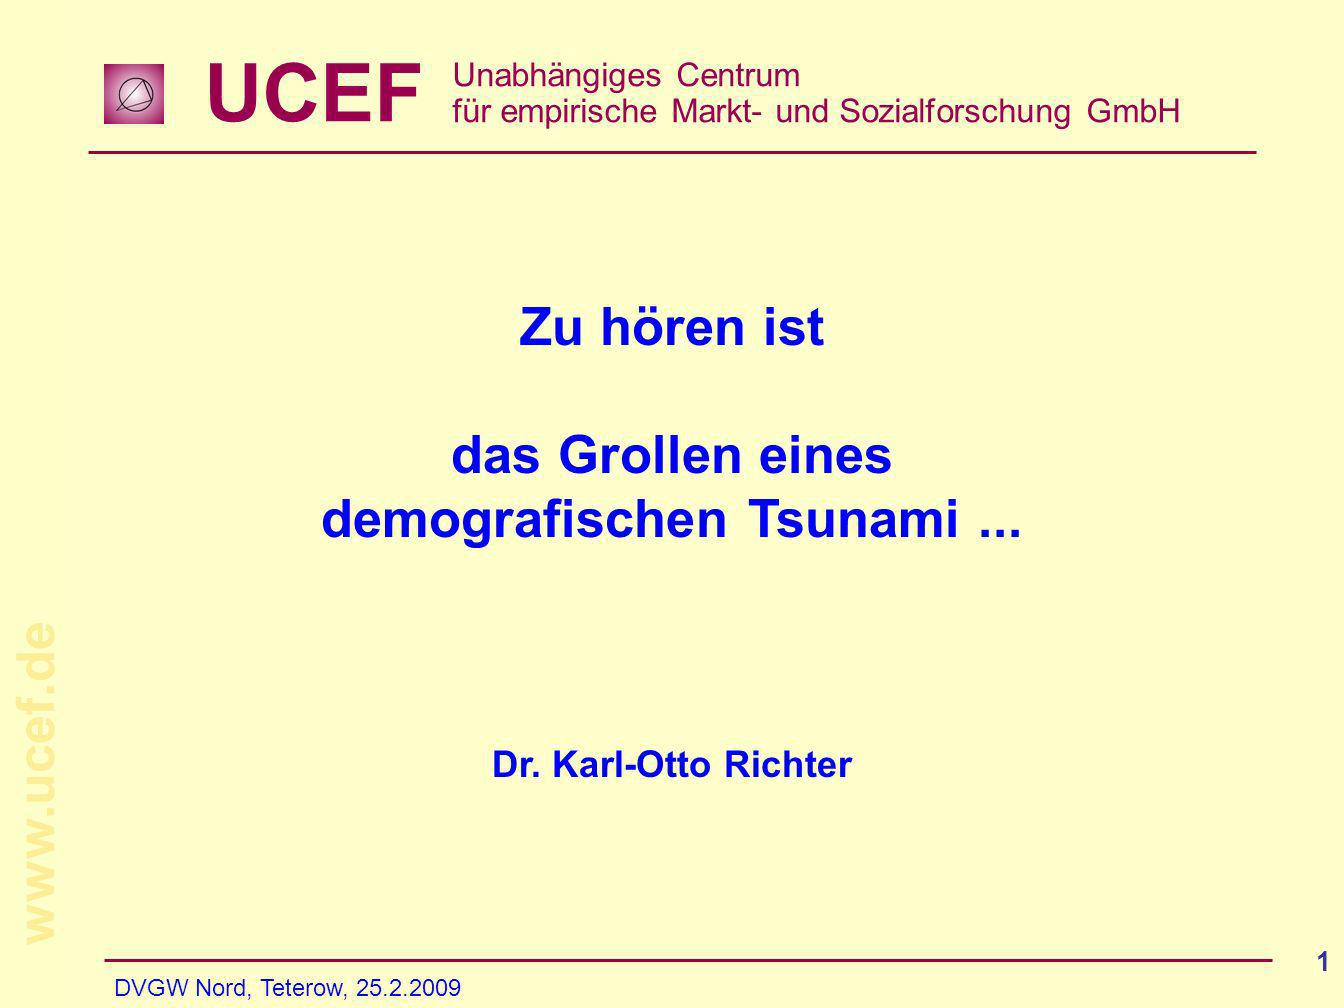 UCEF Unabhängiges Centrum für empirische Markt- und Sozialforschung GmbH   DVGW Nord, Teterow, Zu hören ist das Grollen eines demografischen Tsunami...